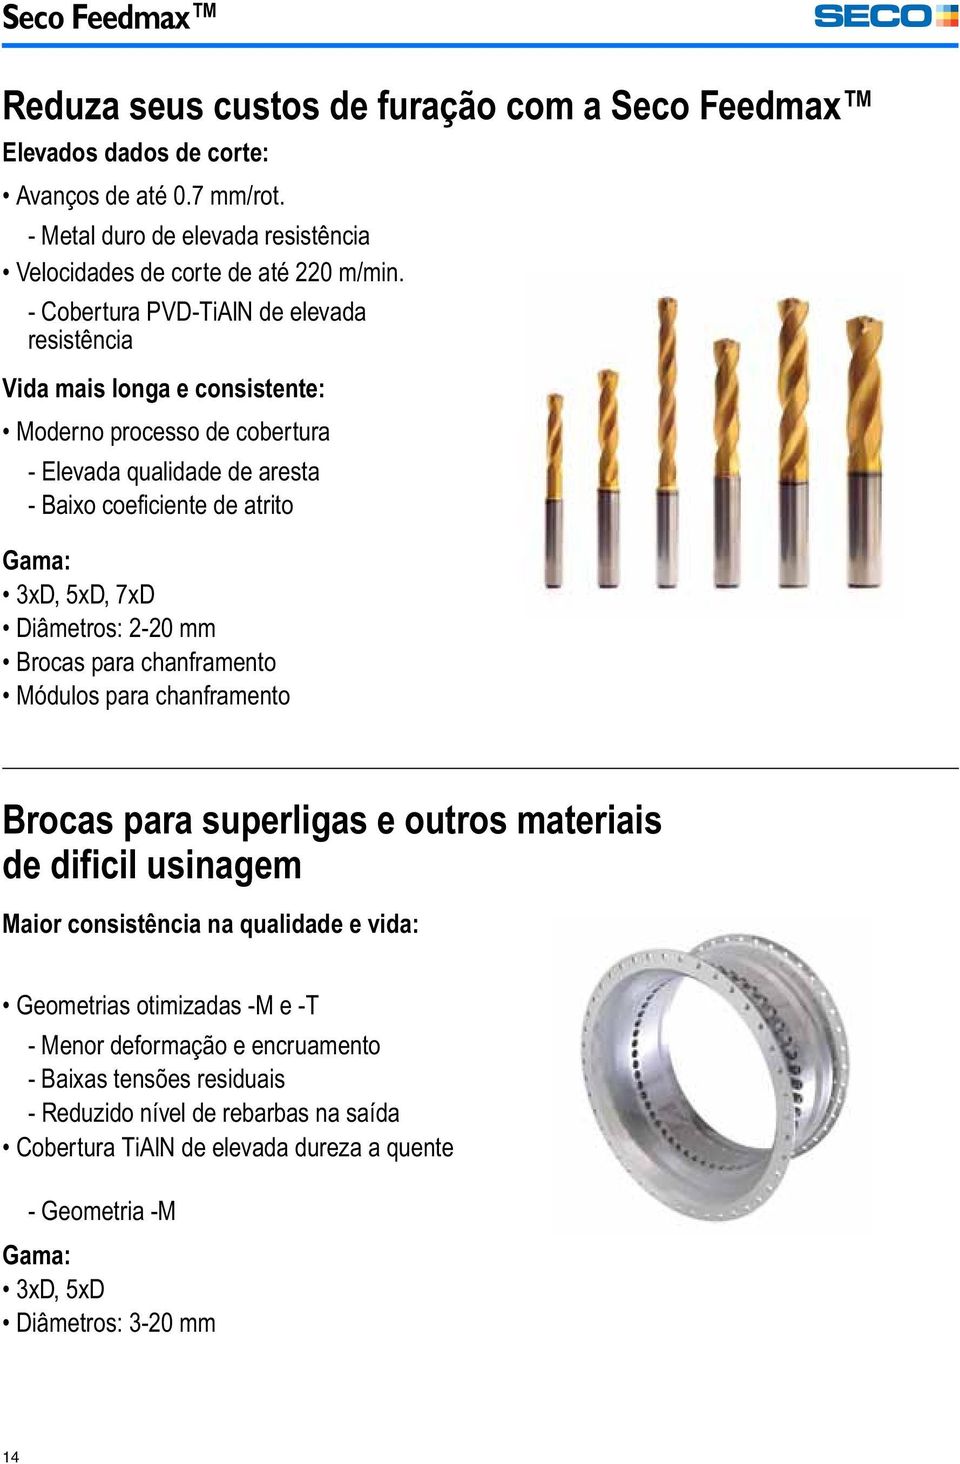 Diâmetros: 2-20 mm Brocas para chanframento Módulos para chanframento Brocas para superligas e outros materiais de dificil usinagem Maior consistência na qualidade e vida: Geometrias otimizadas